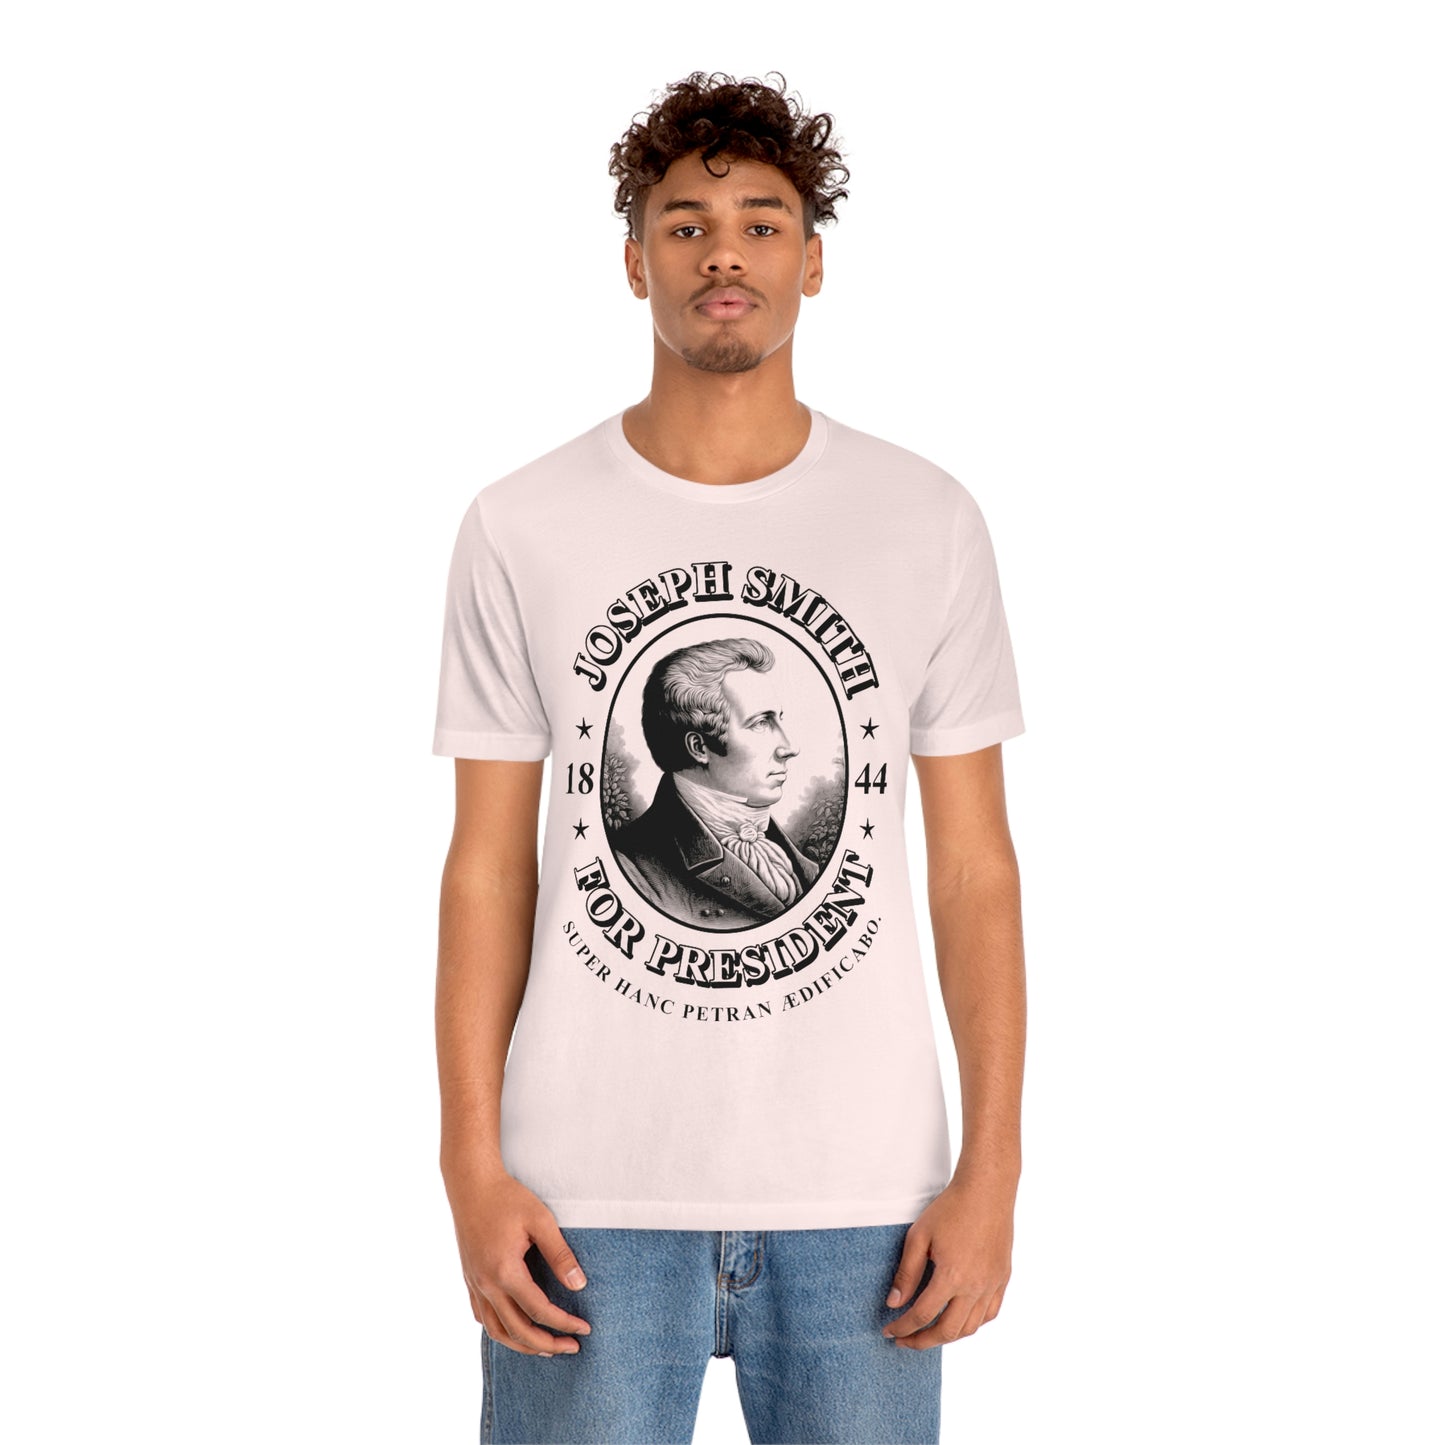 Joseph Smith For President 1844 T-Shirt